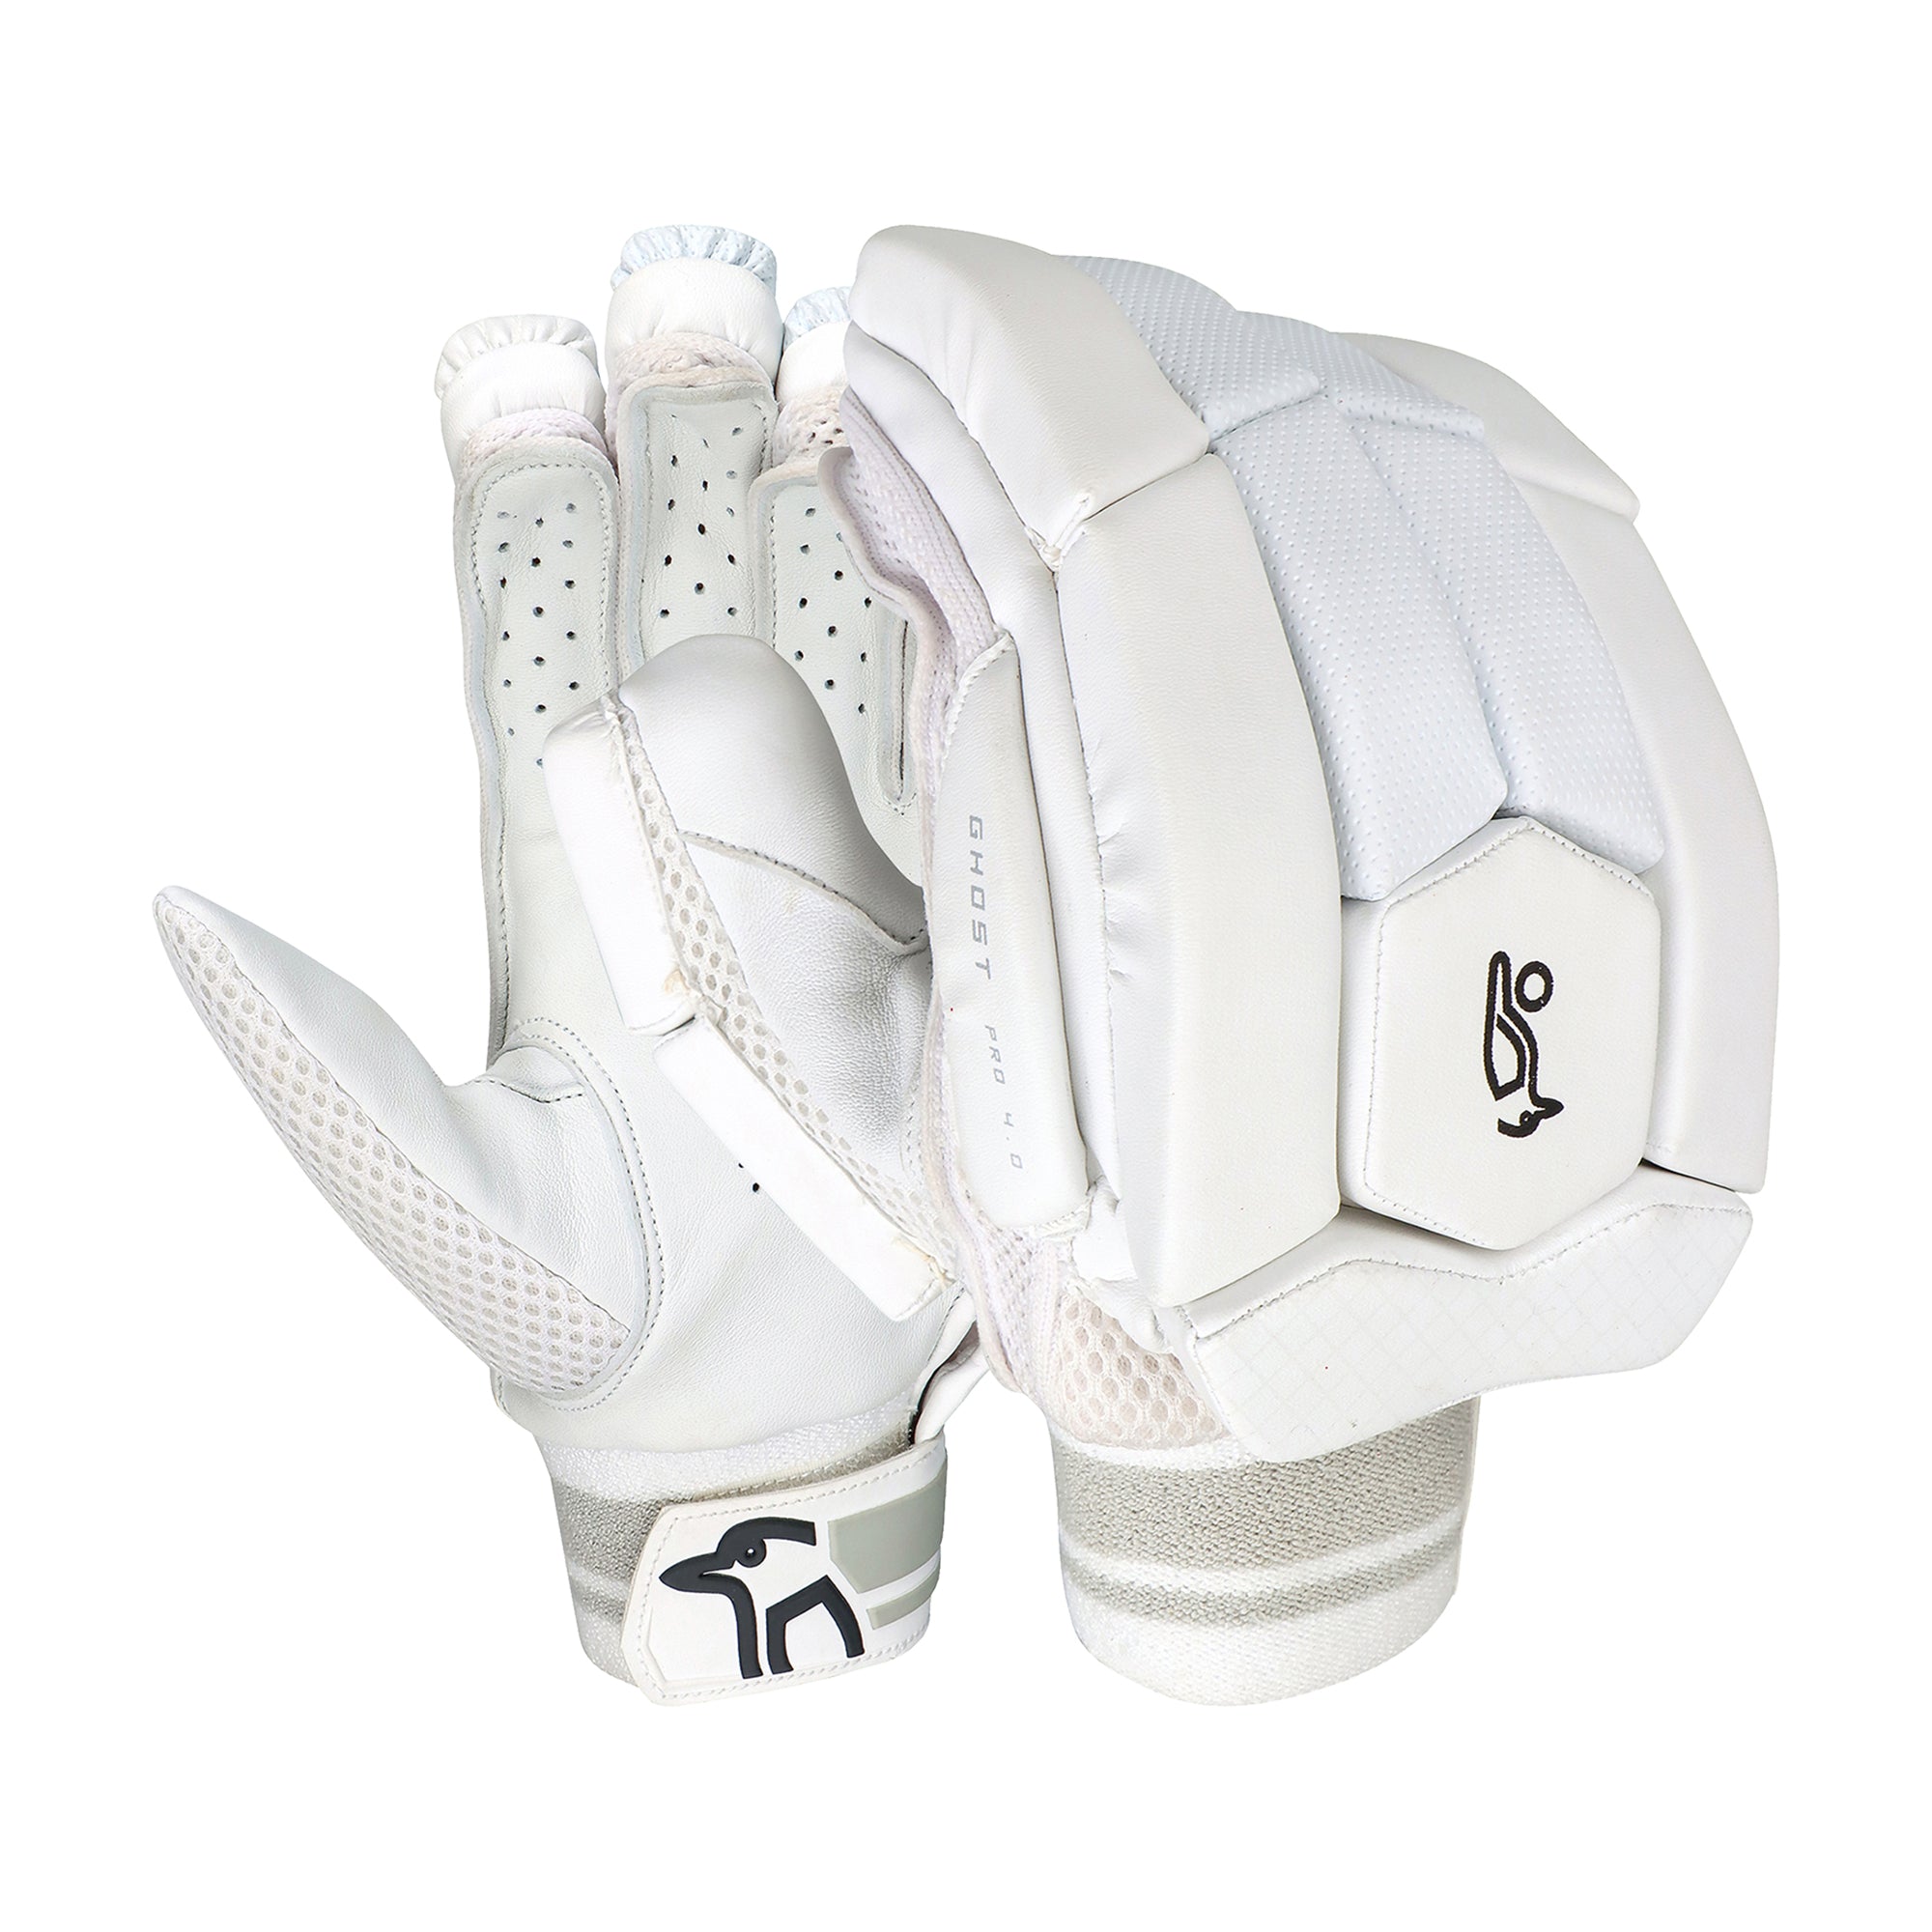 Kookaburra Ghost Pro 4.0 Batting Gloves - The Cricket Warehouse